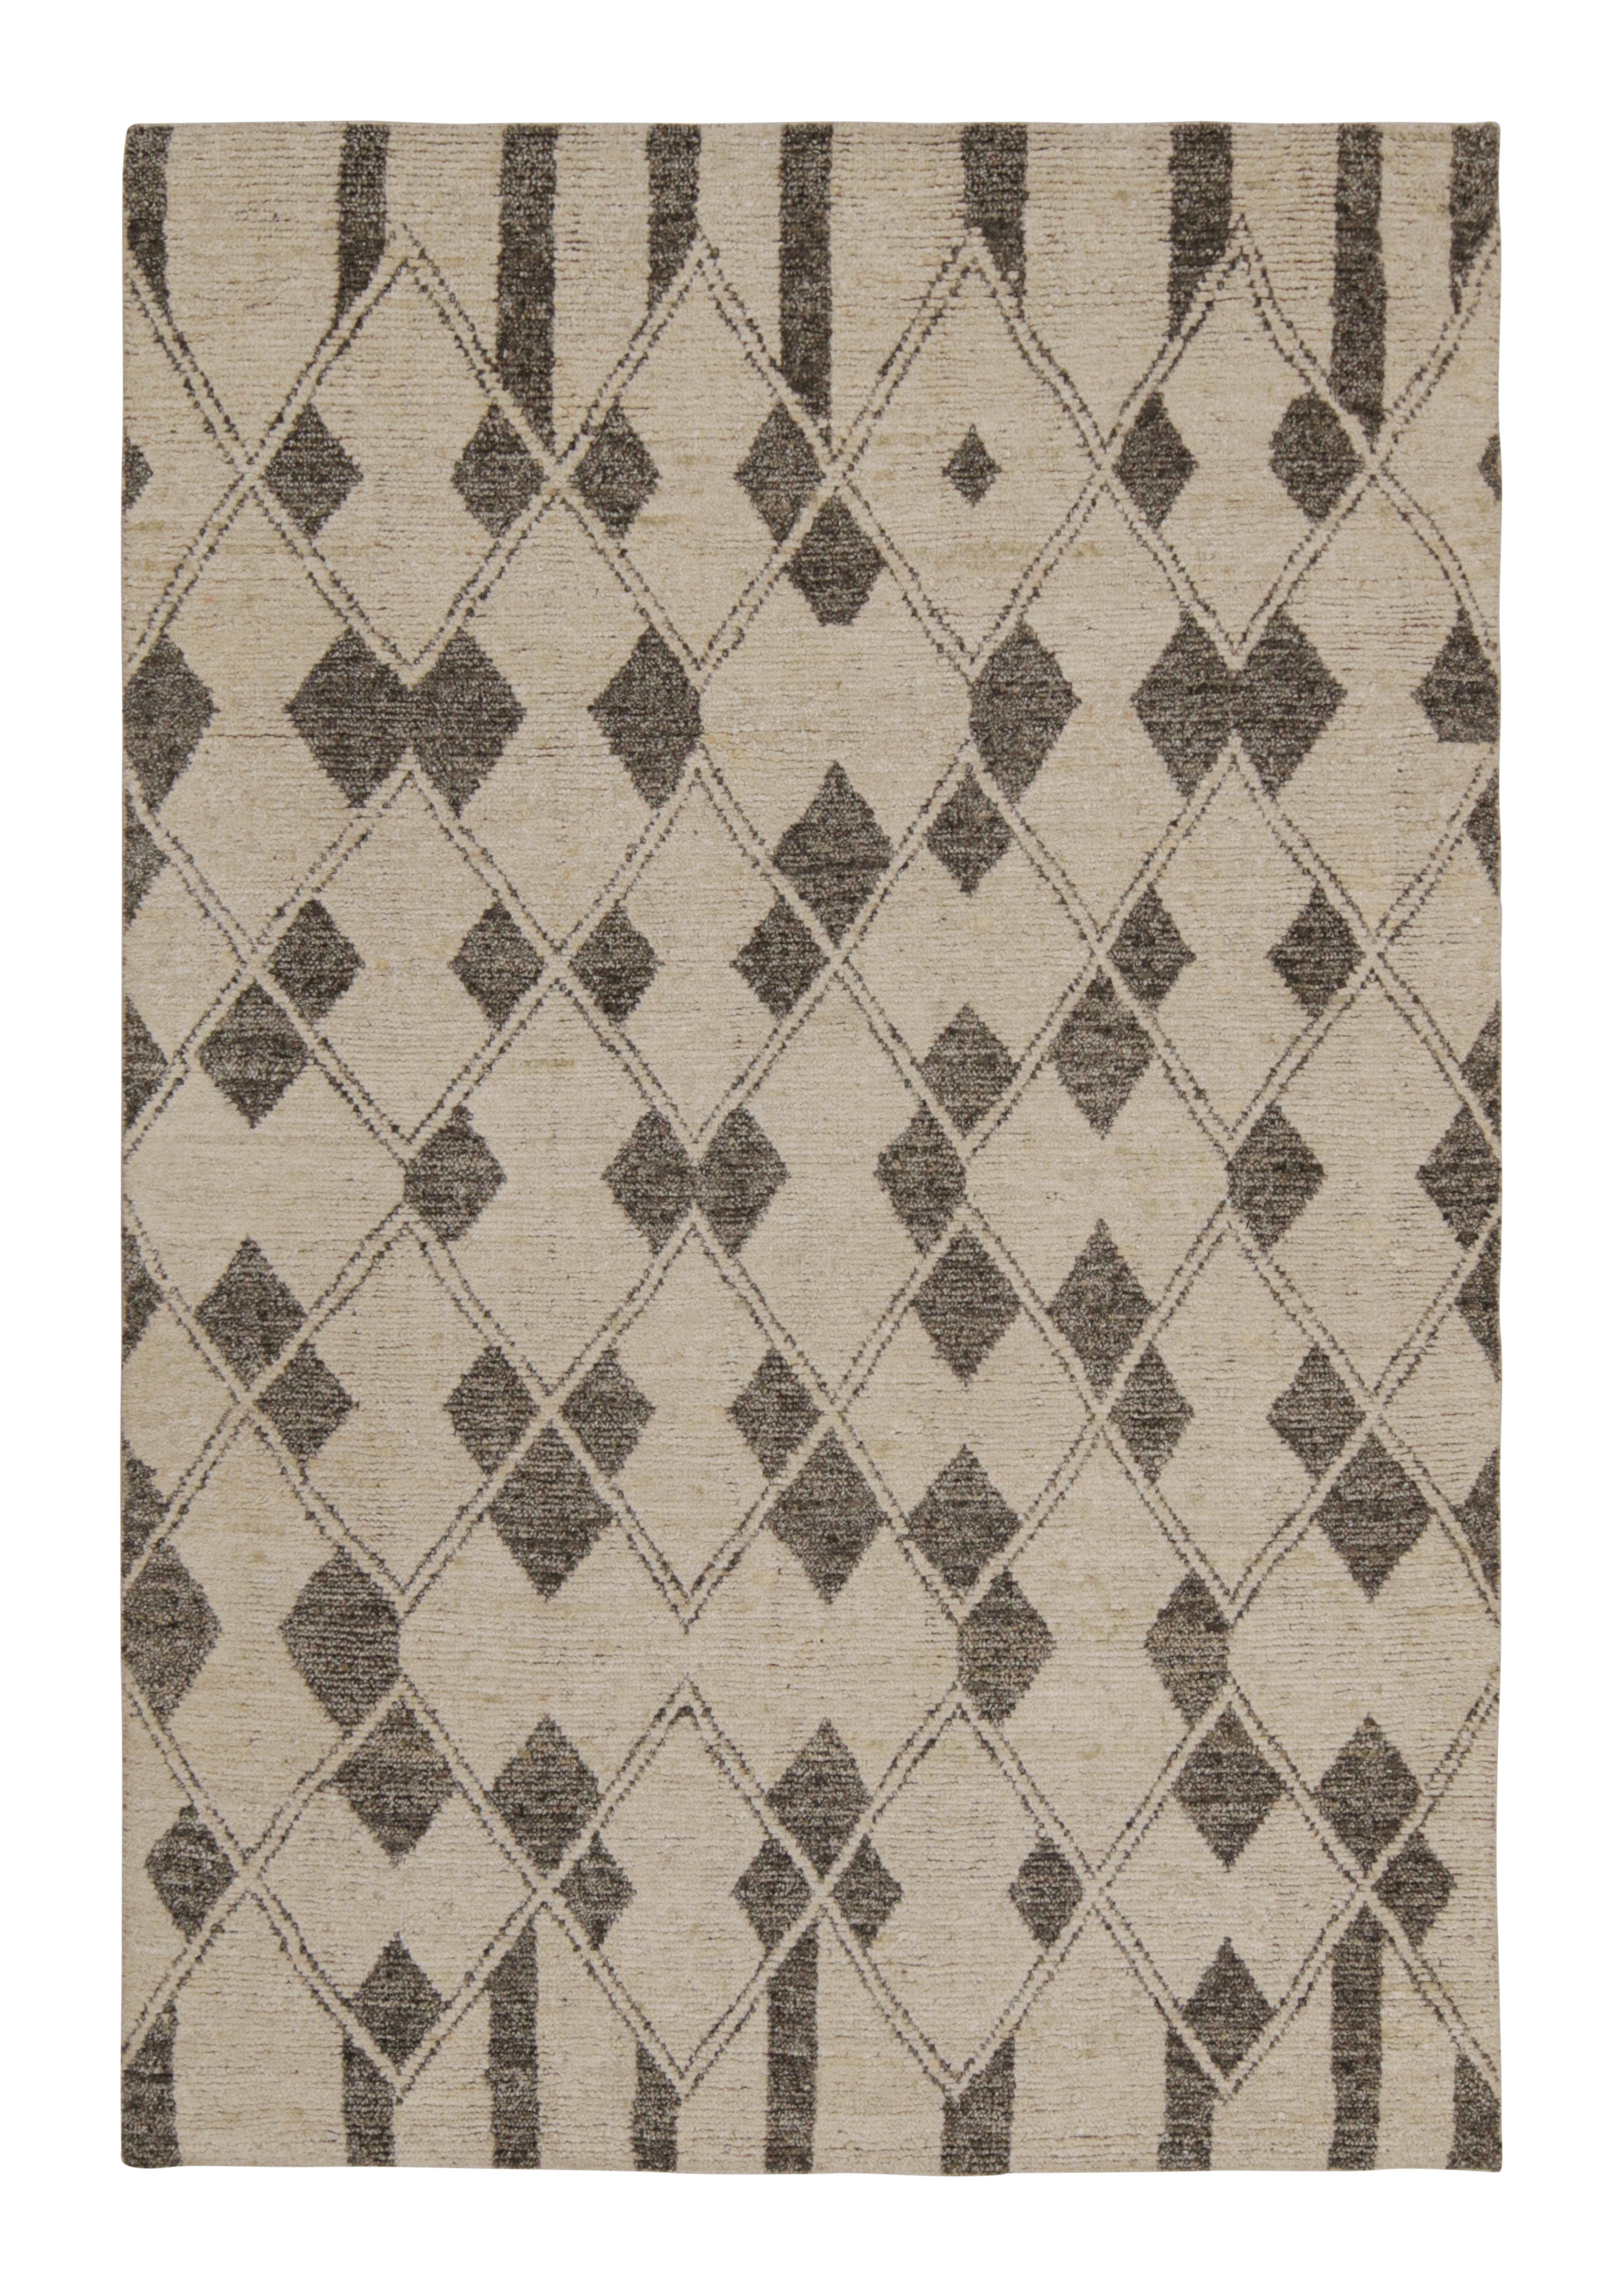 Tapis et tapis de style marocain de Kilim en beige avec motifs de diamants gris